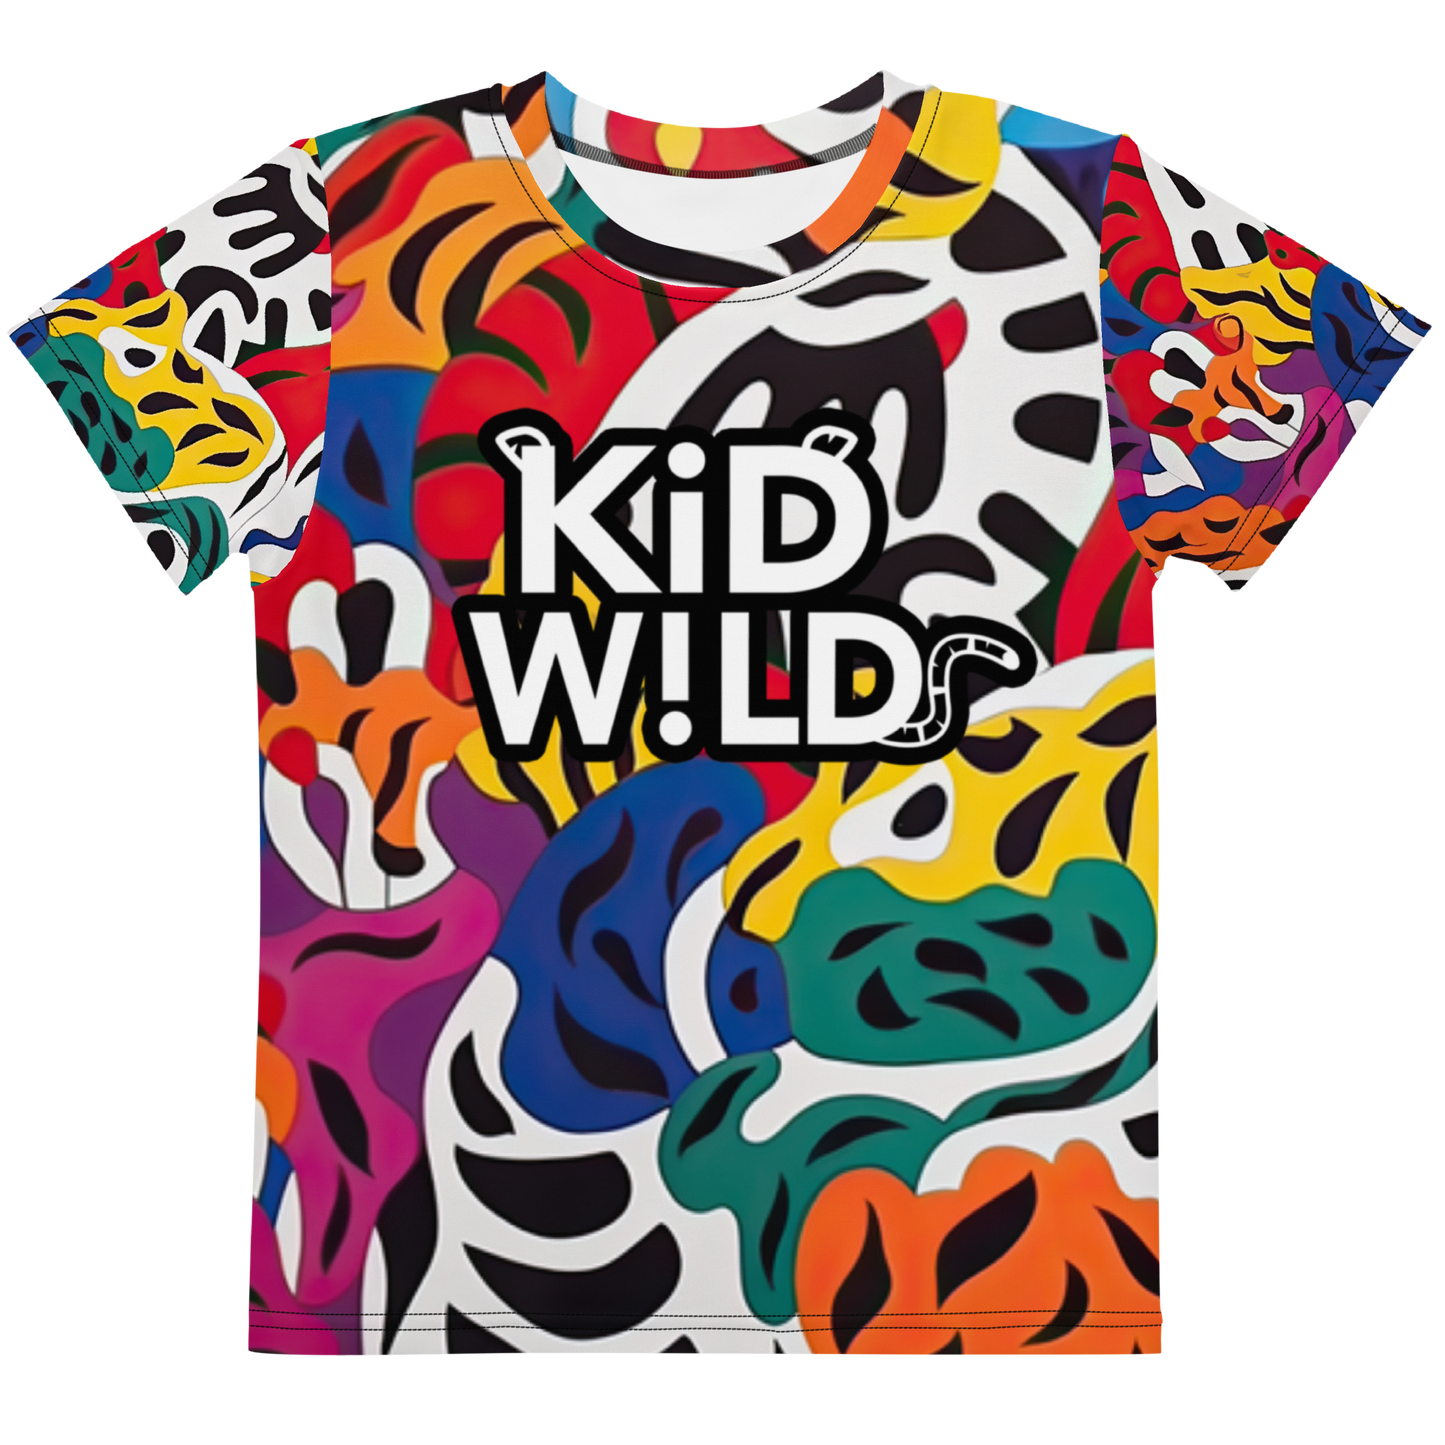 KiD W!LD Wild Print Tee